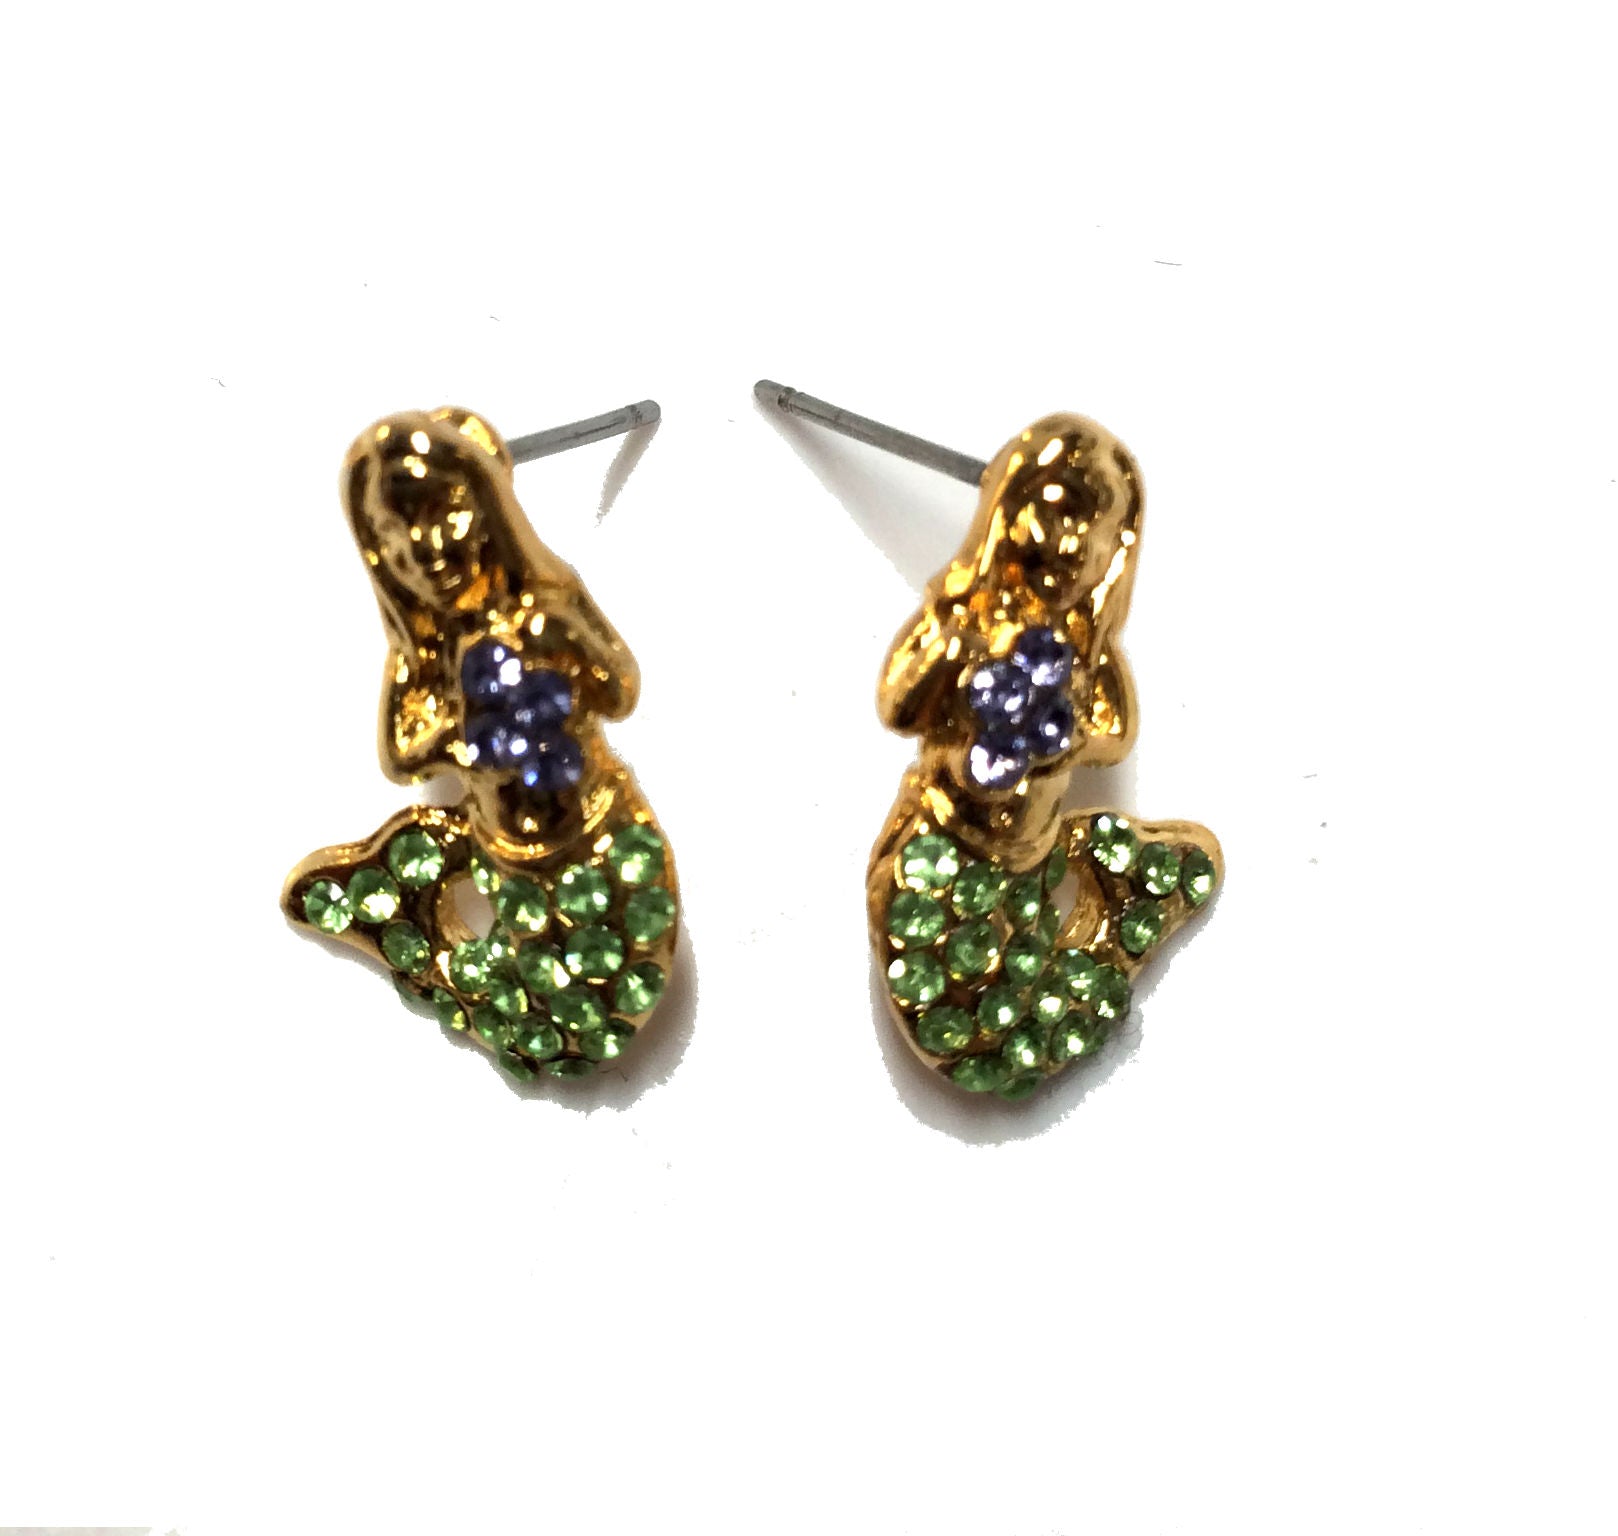 Mermaid Post Earrings #38-2970PE (Peridot Green)